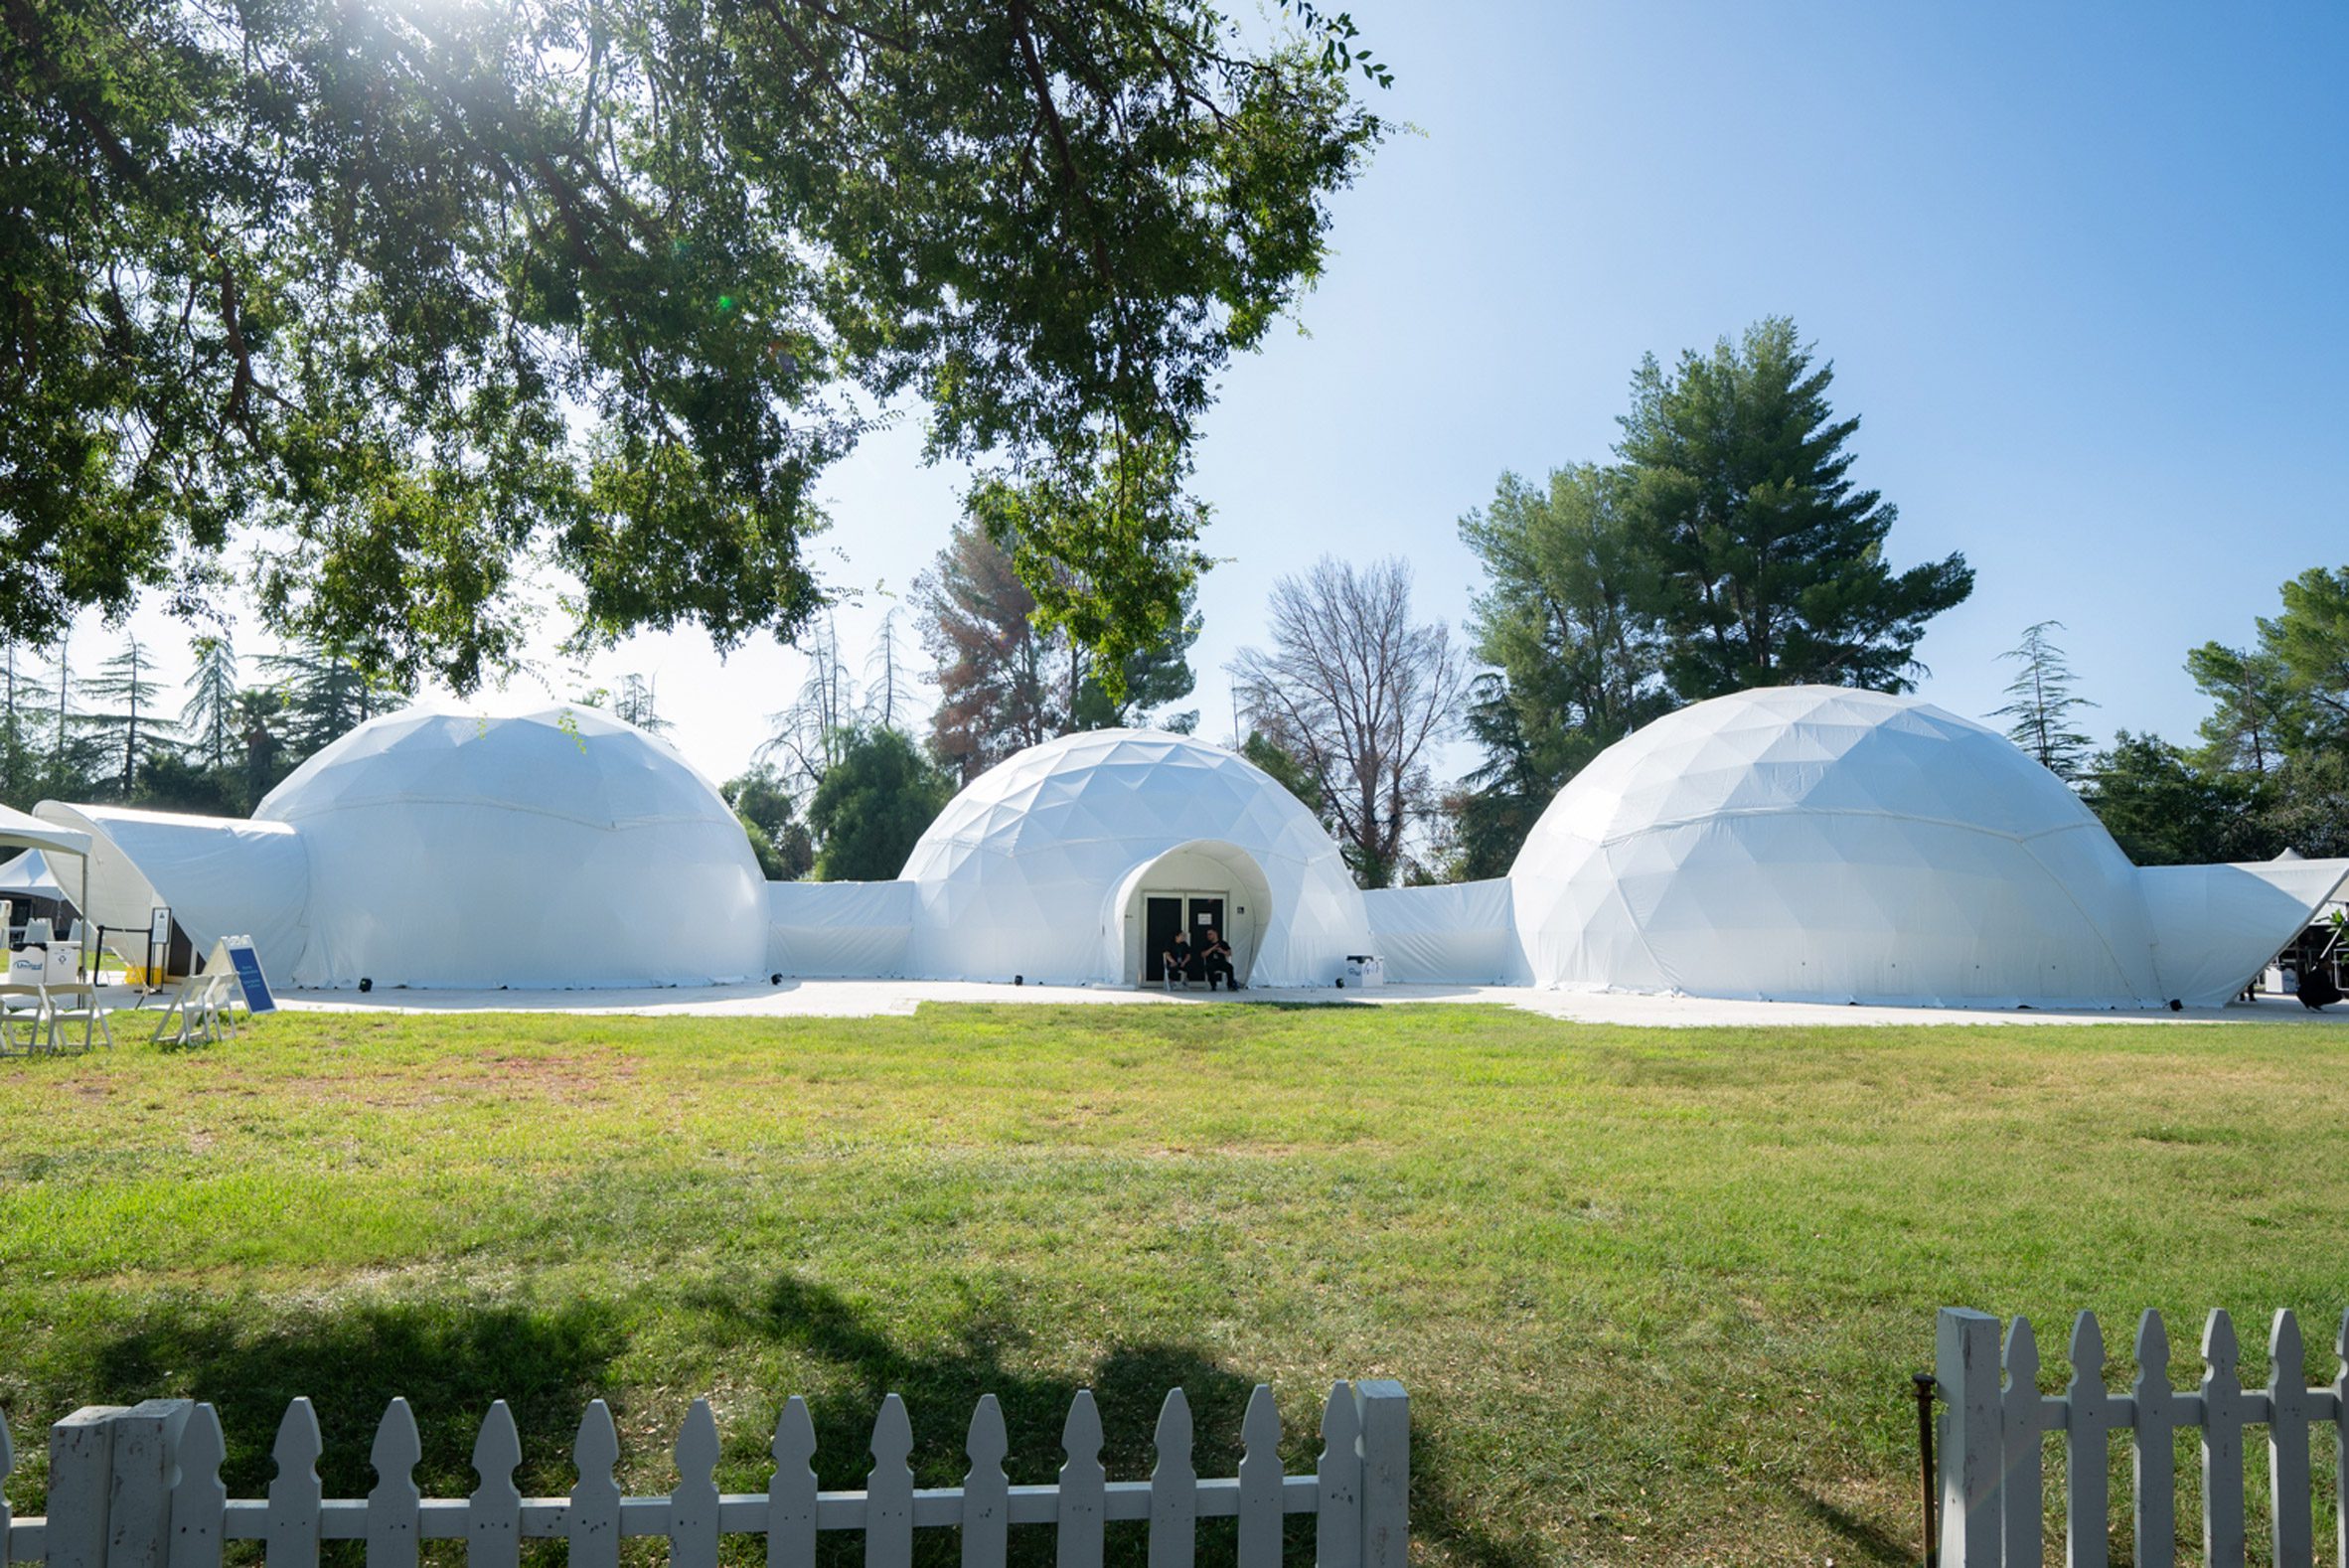 Three white geodesic domes